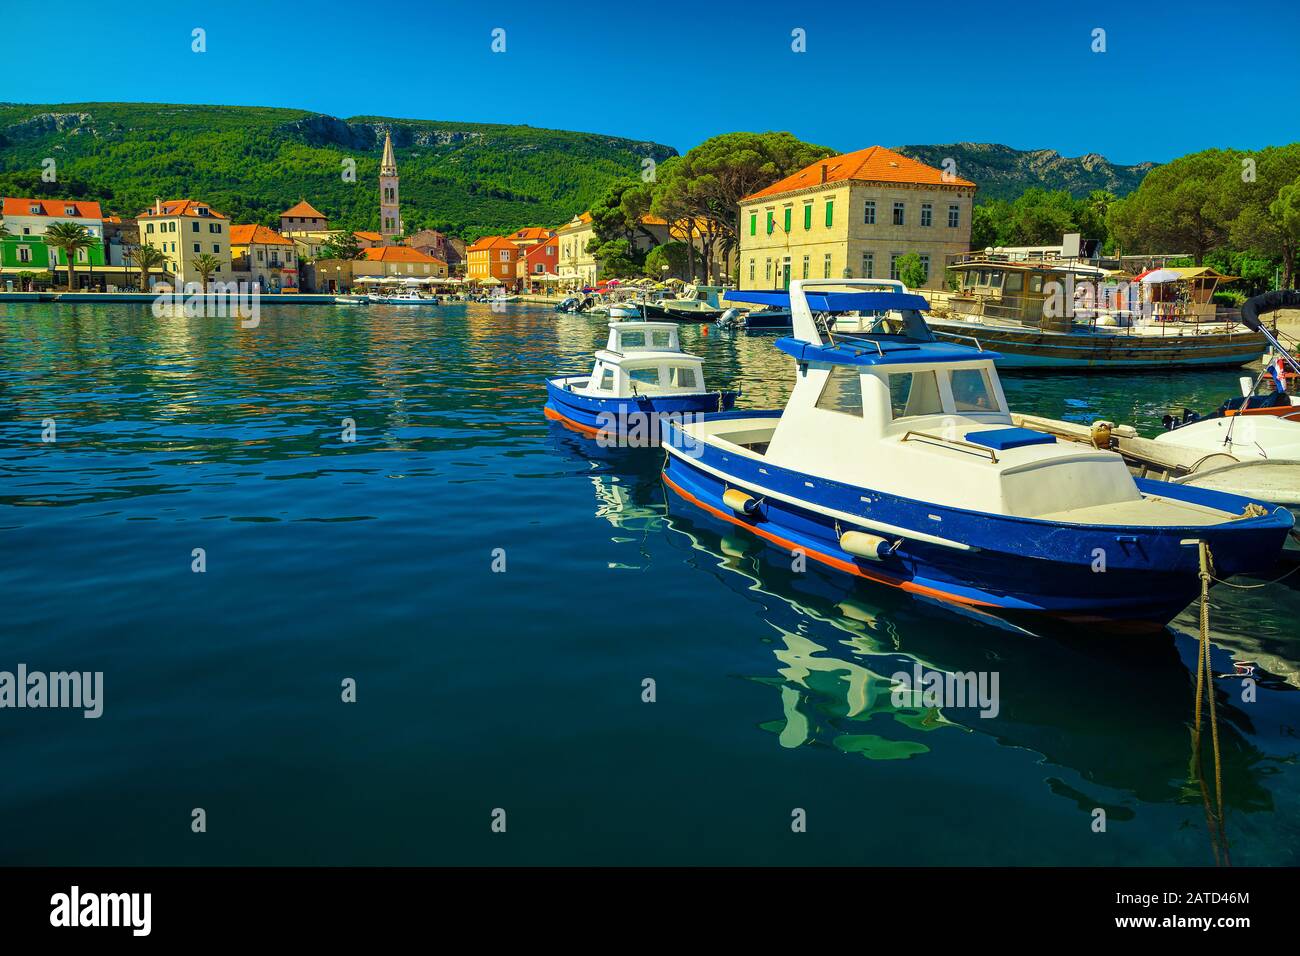 Célèbre complexe méditerranéen médiéval avec un port fantastique et un paysage urbain spectaculaire. Bateaux de pêche ancrés dans le port de Jelsa, île de Hvar, Dalmat Banque D'Images